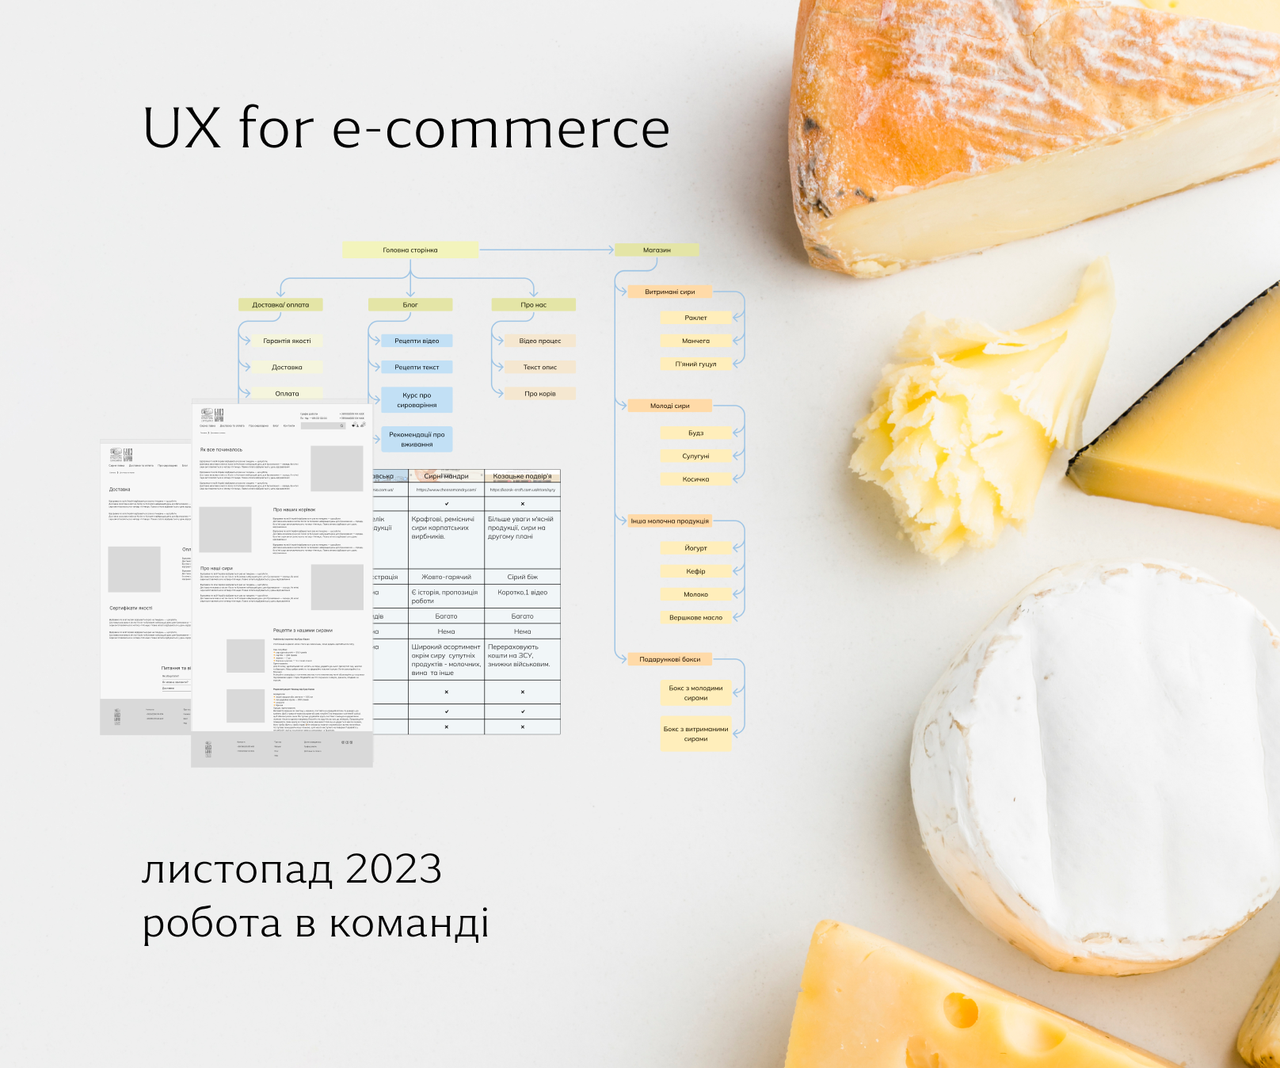 UX for e-commerce